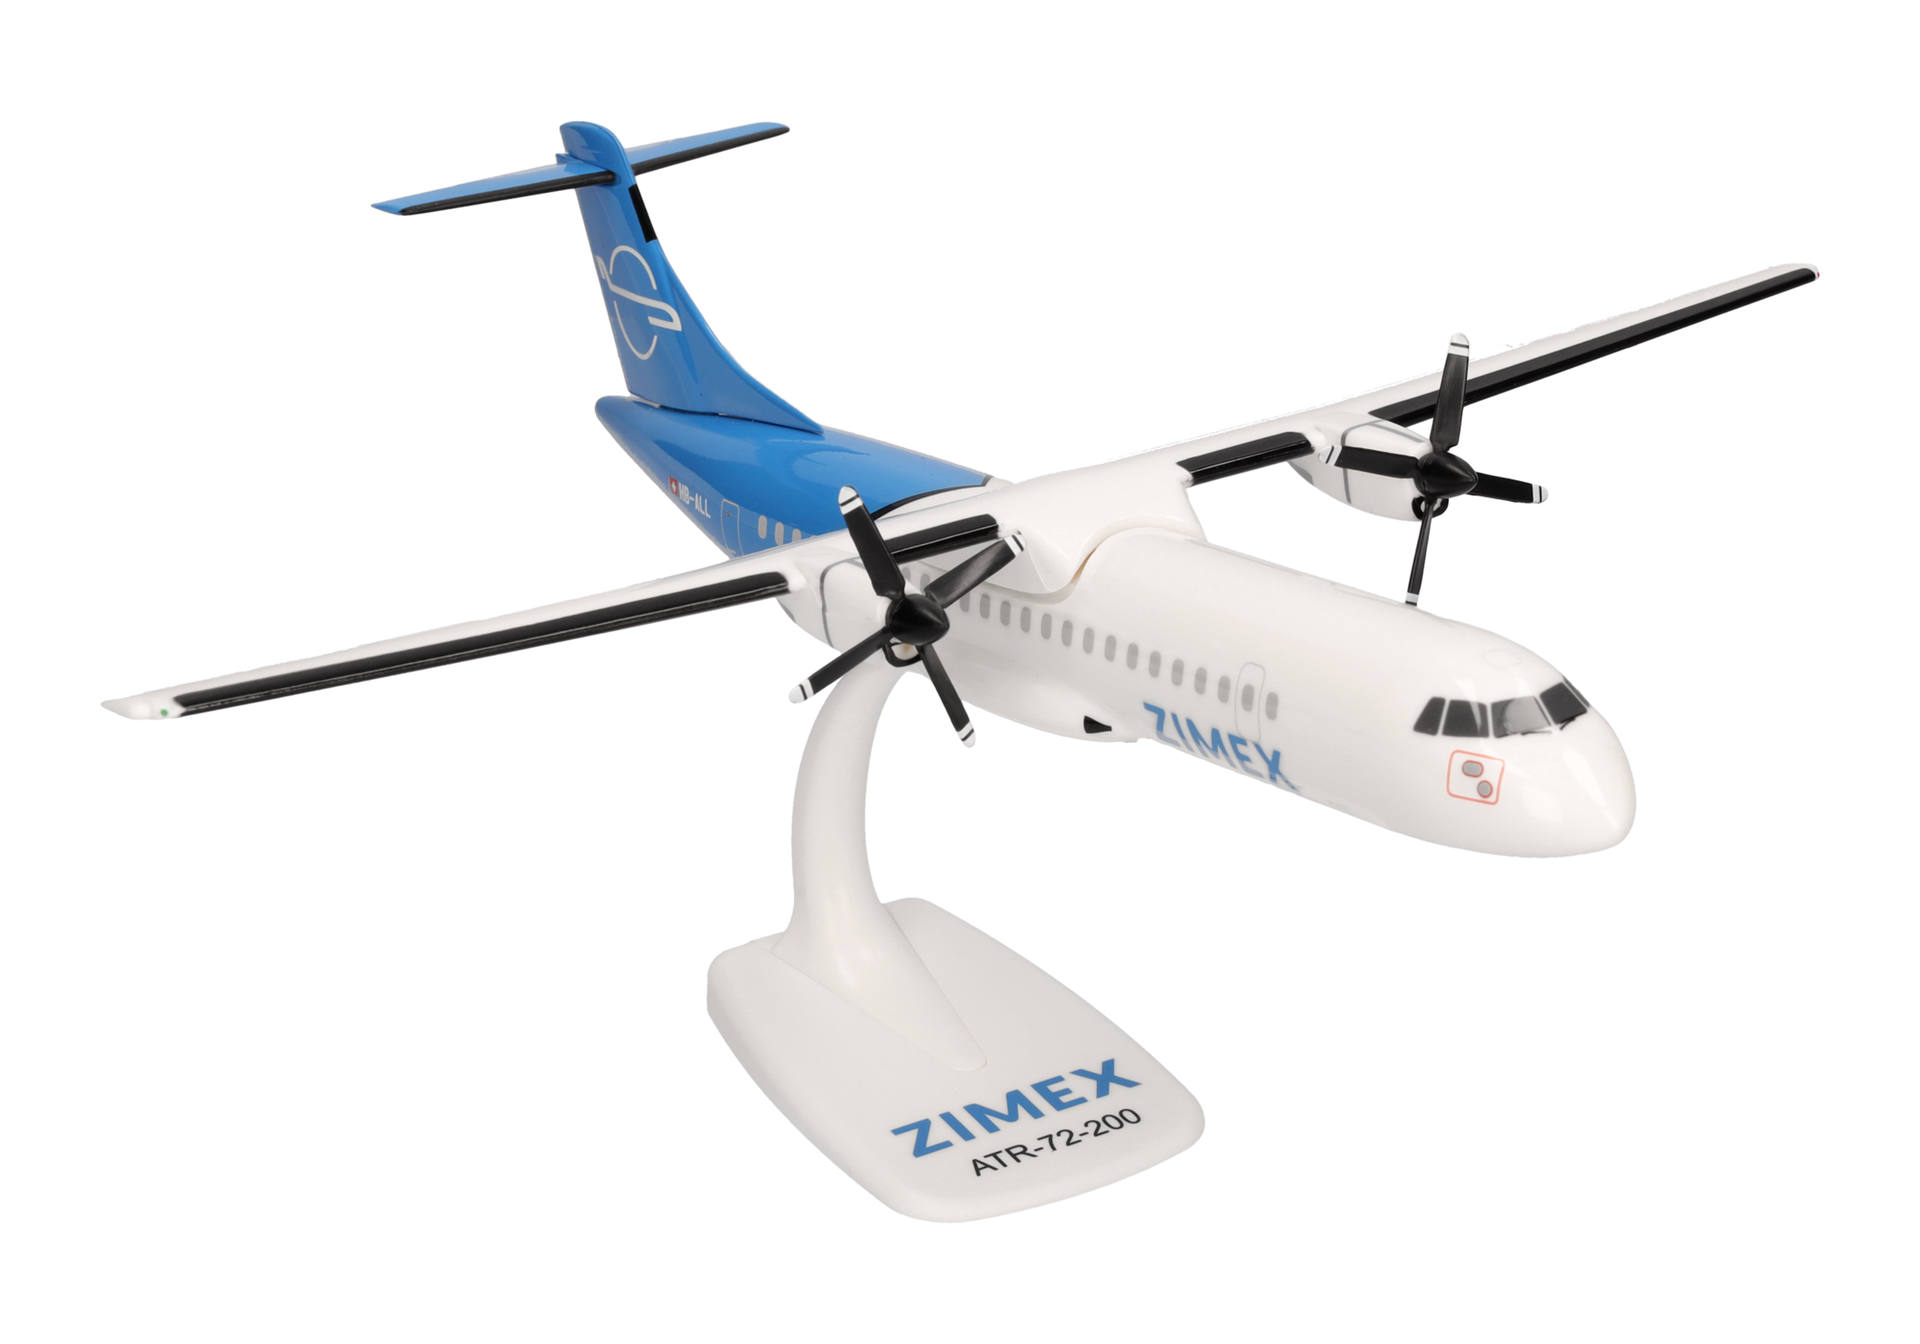 Zimex Aviation ATR-72-200F